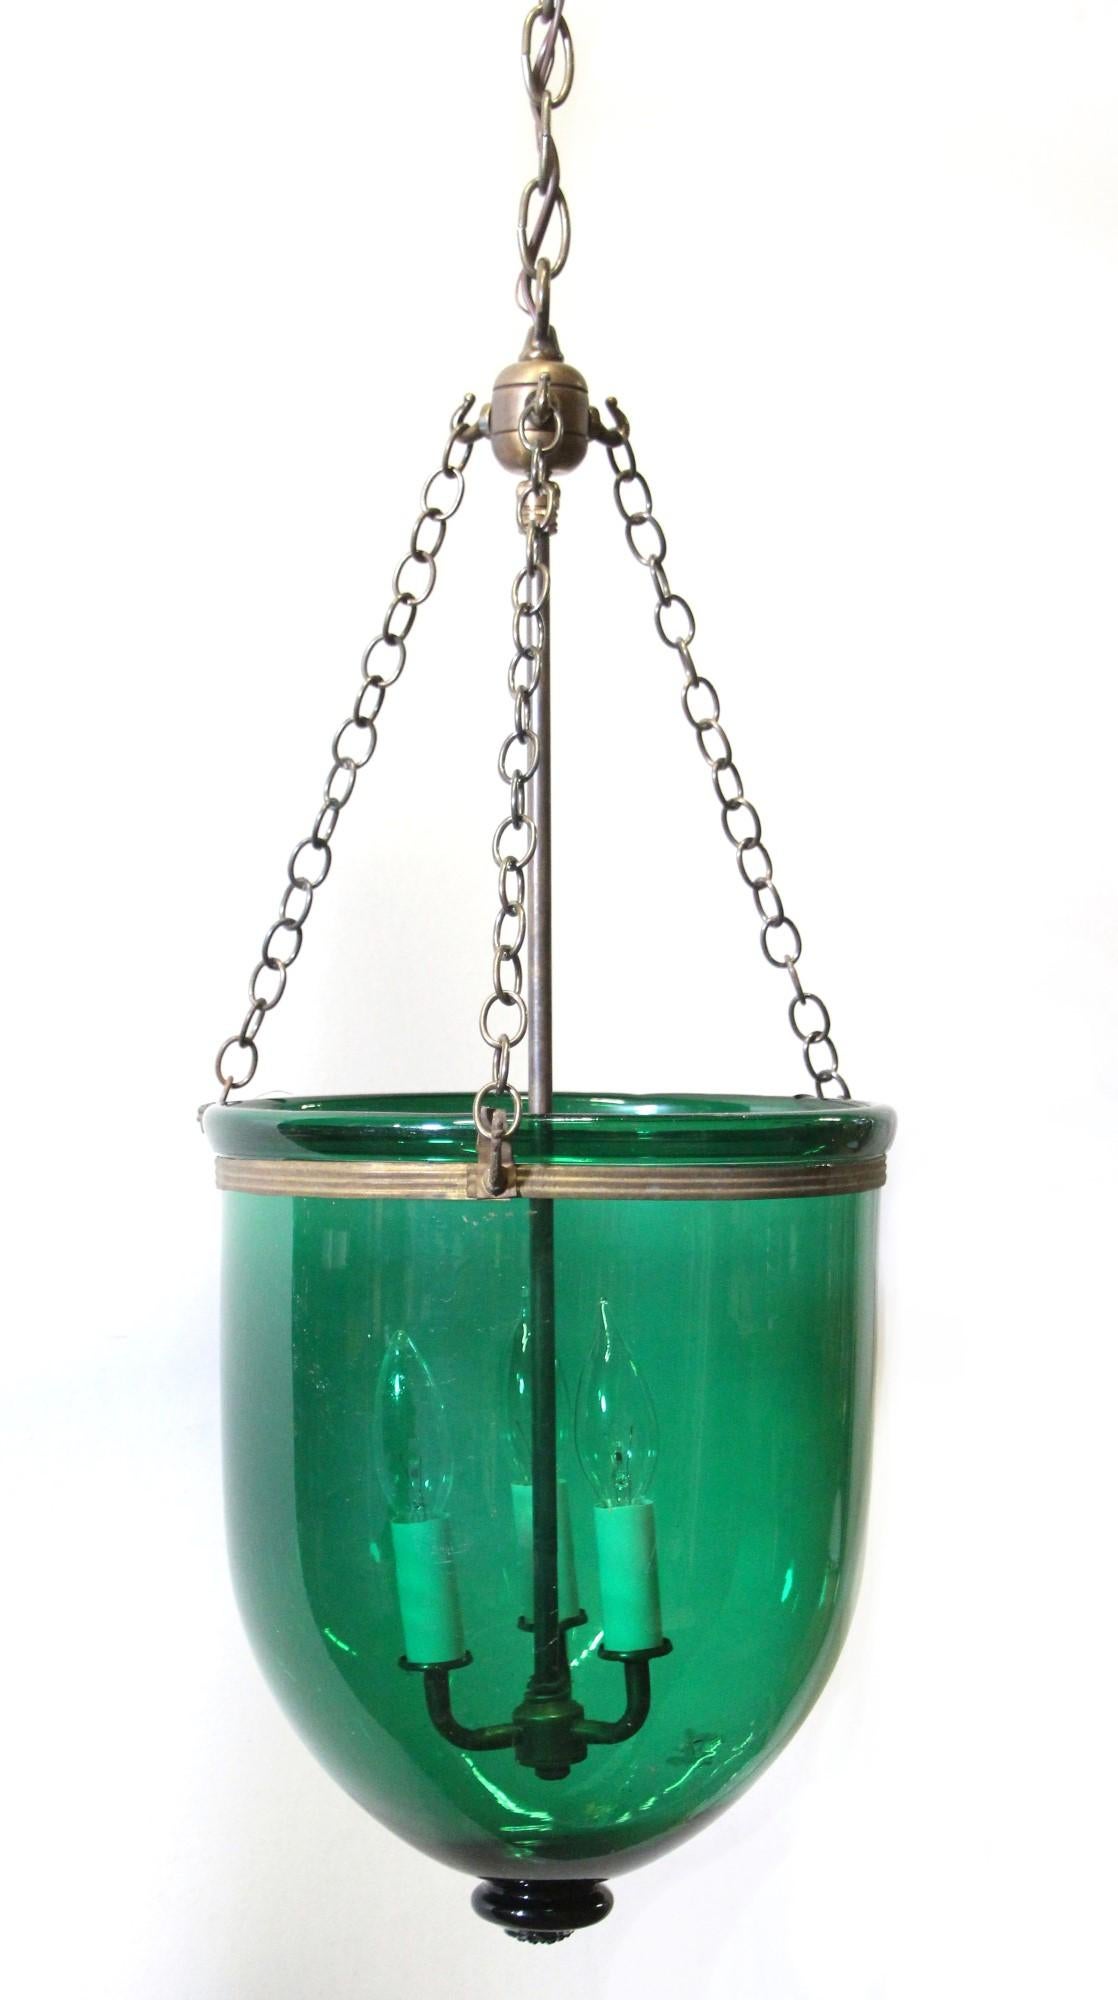 European Green Glass Bell Jar Pendant Light Hand-Blown W/ Brass Hardware + 3-Lights, 11.5